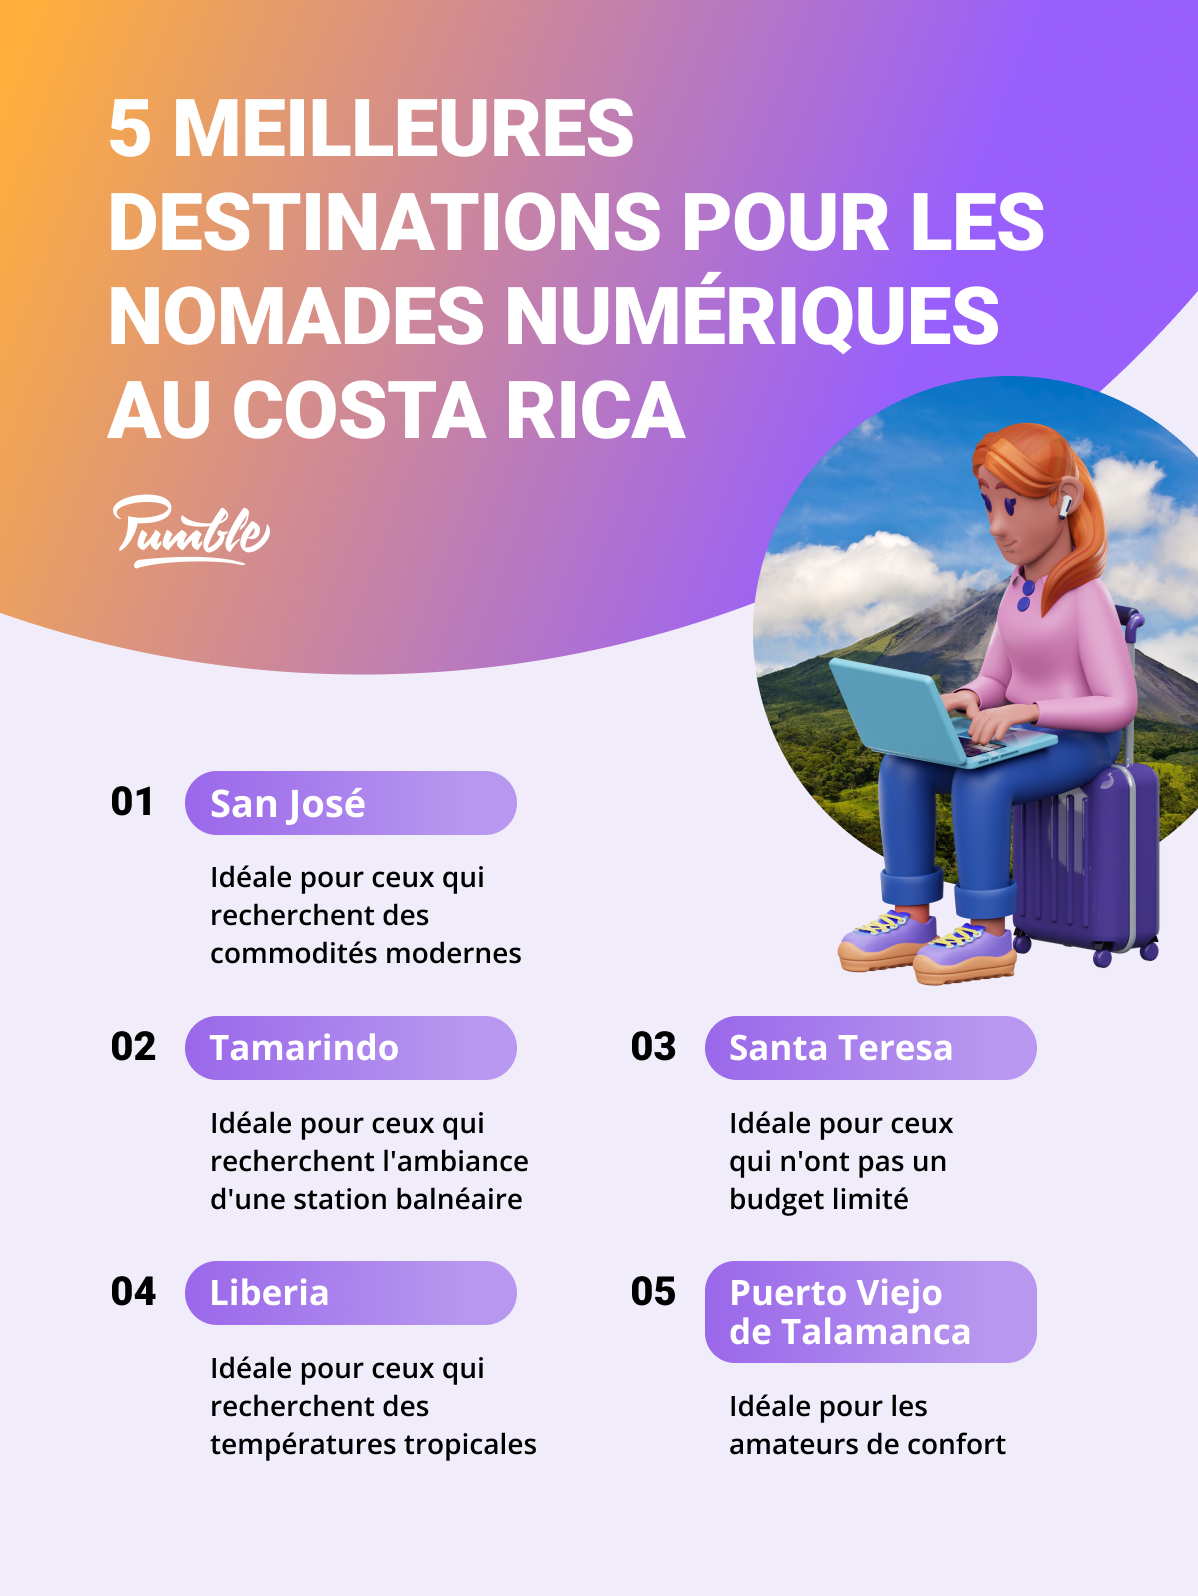 Les 5 meilleures destinations pour les nomades numériques au Costa Rica